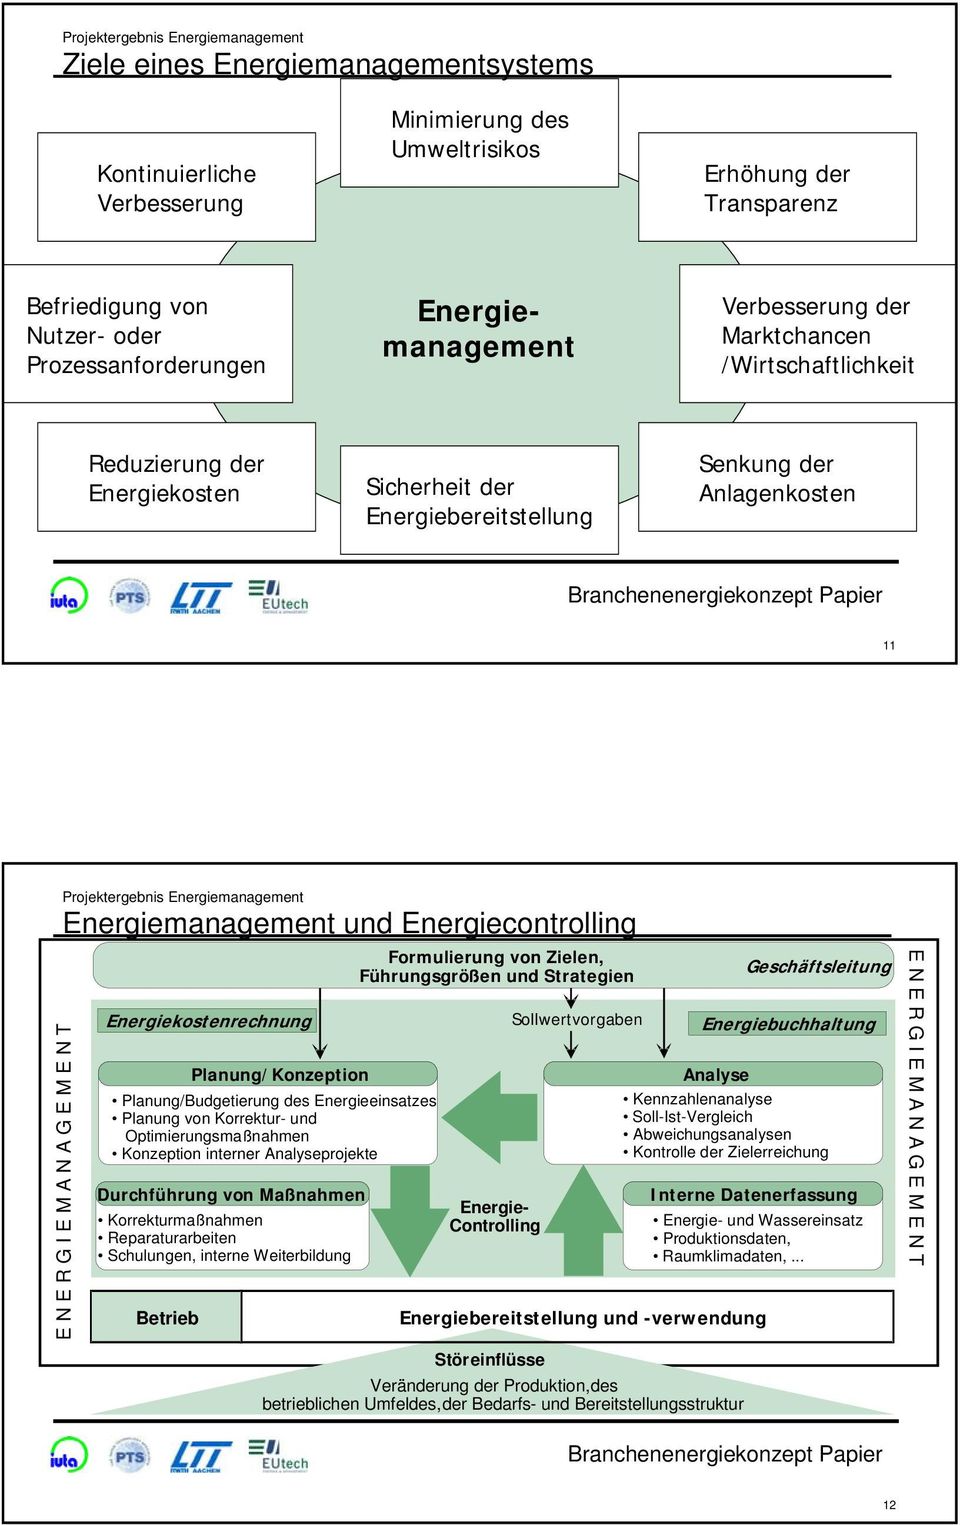 Energiemanagement Energiemanagement und Energiecontrolling E N E R G I E M A N A G E M E N T Energiekostenrechnung Planung/Konzeption Planung/Budgetierung des Energieeinsatzes Planung von Korrektur-